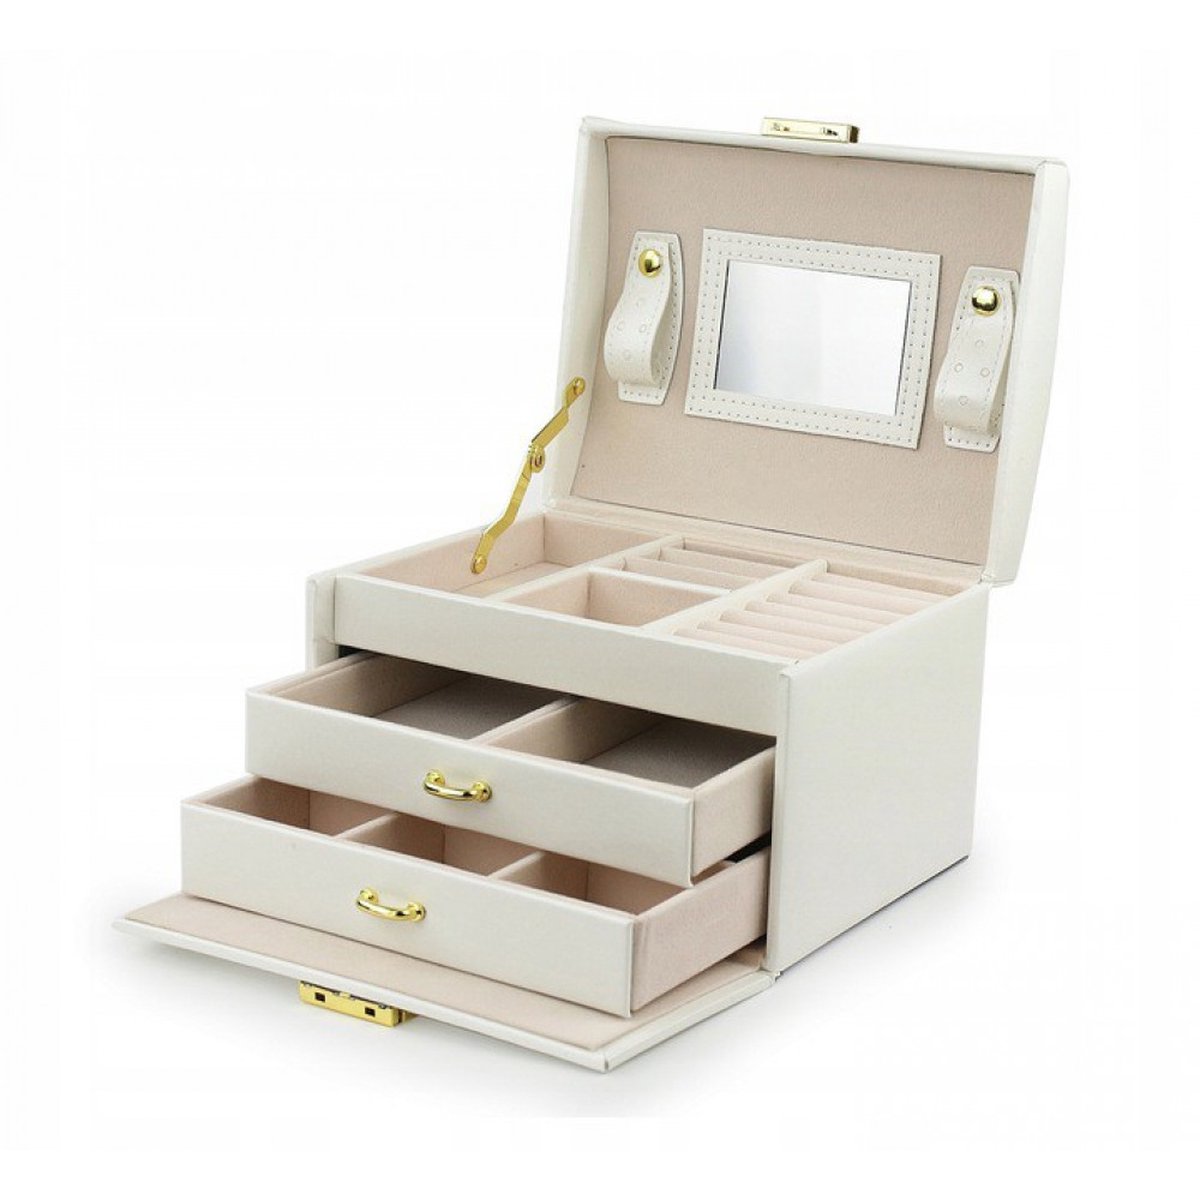 Sieradendoos - Juwelen doos voor sieraden (ring, ketting, oorbellen, horloge) – Dames bijouterie doos - Crèmebeige.